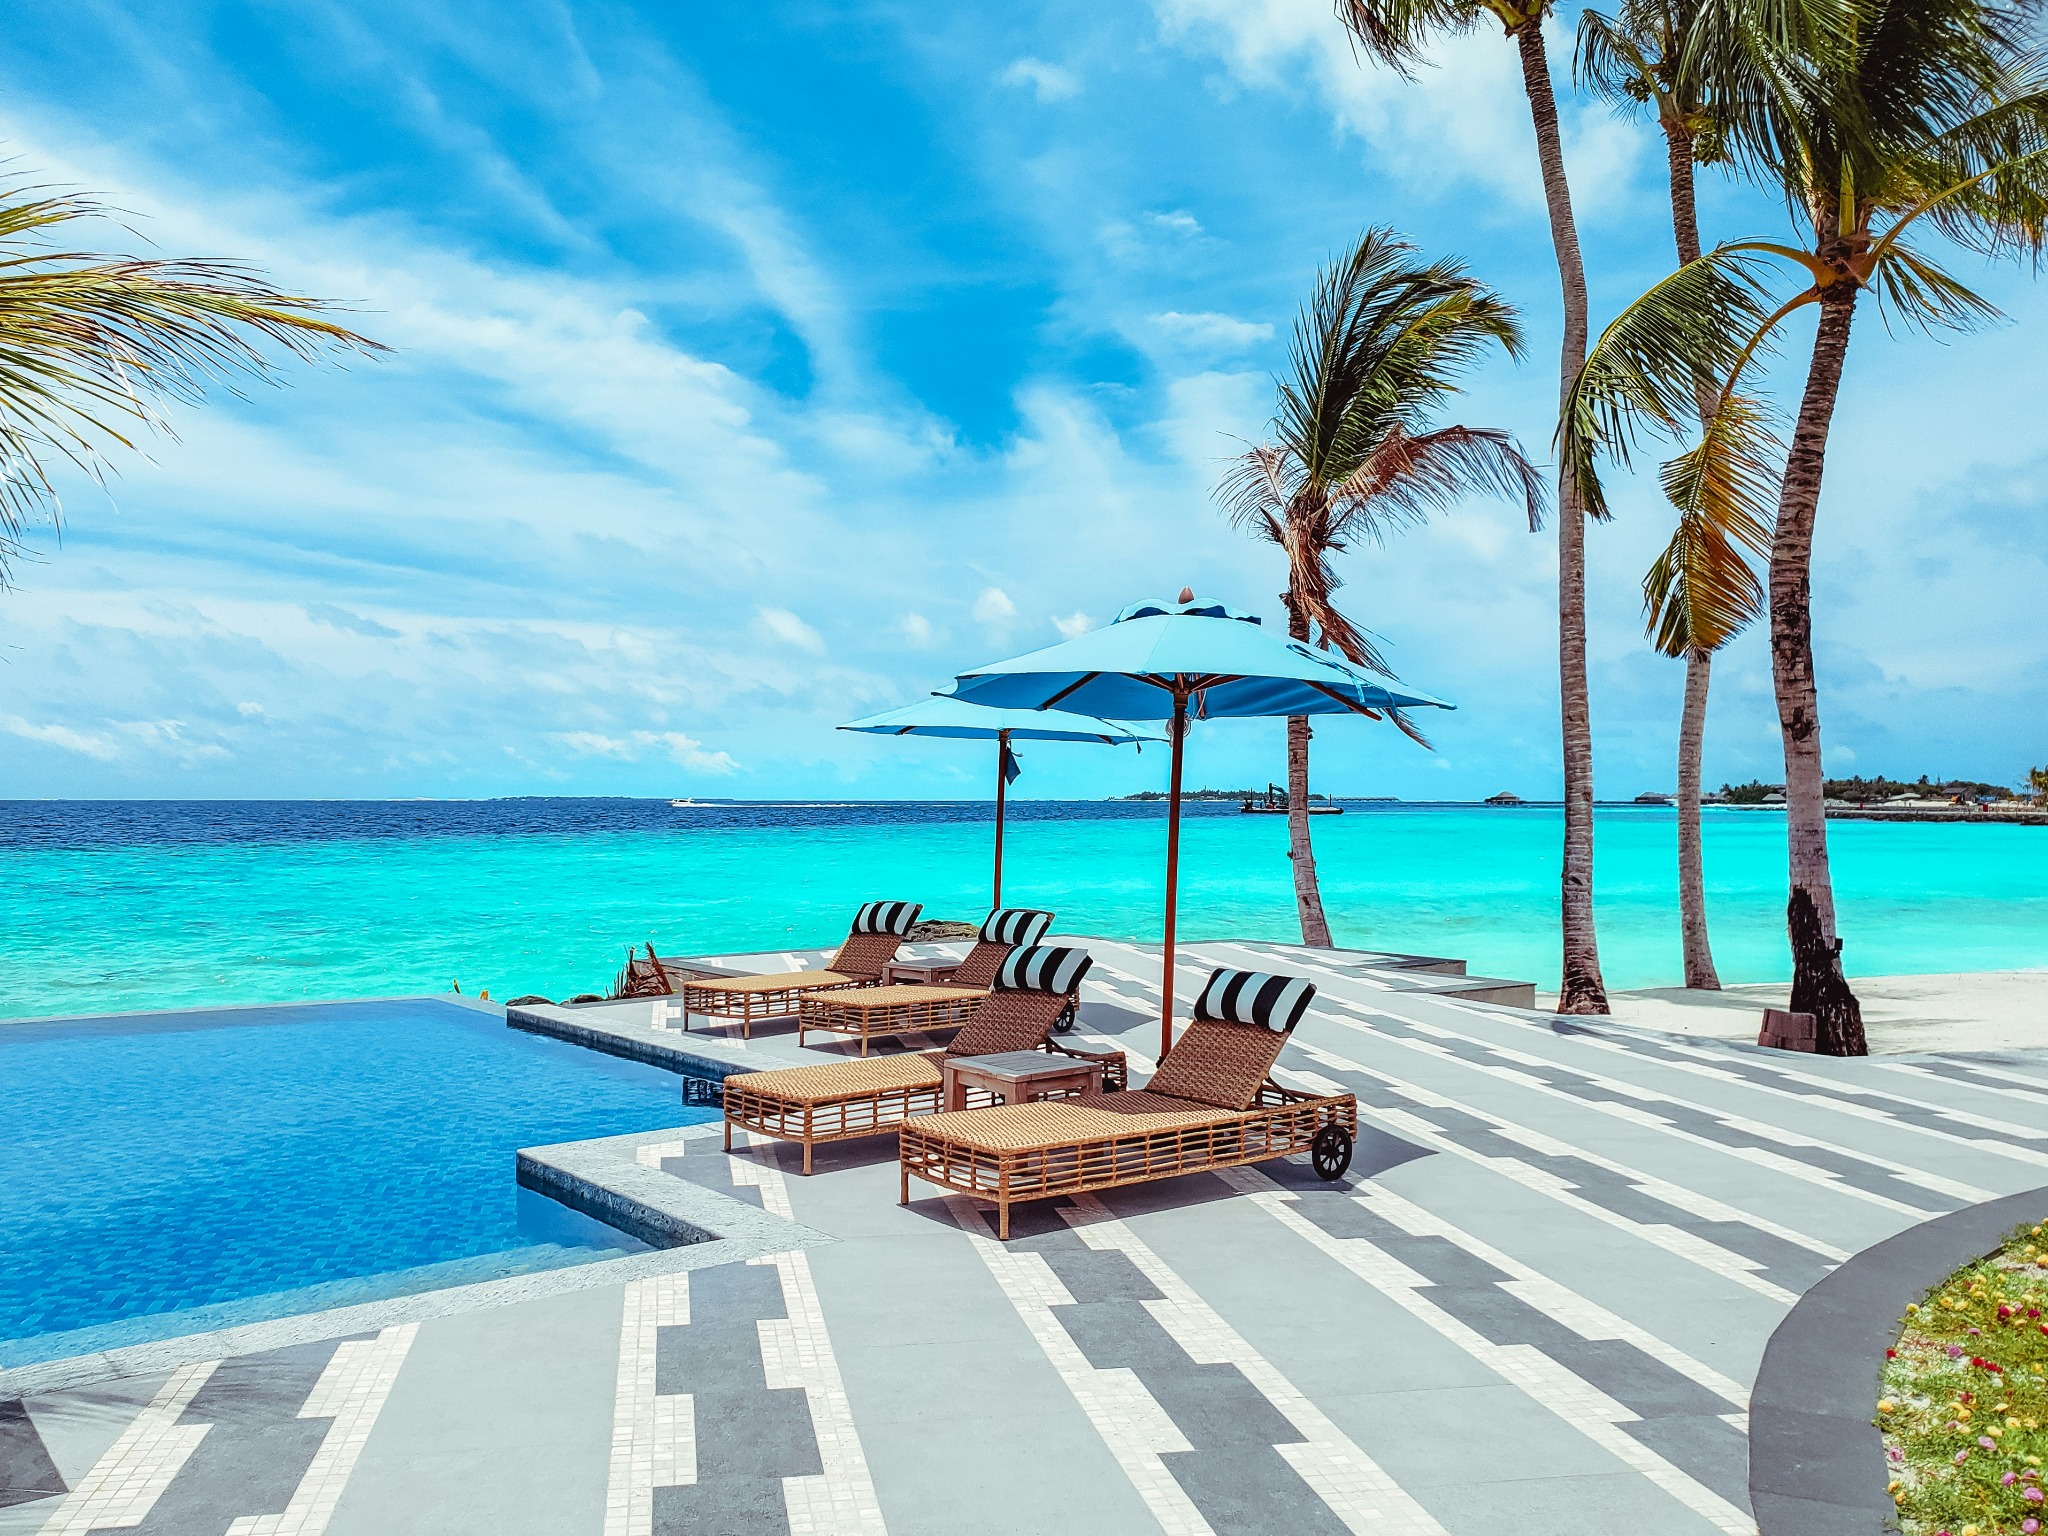 Luxury poolside tropical resort